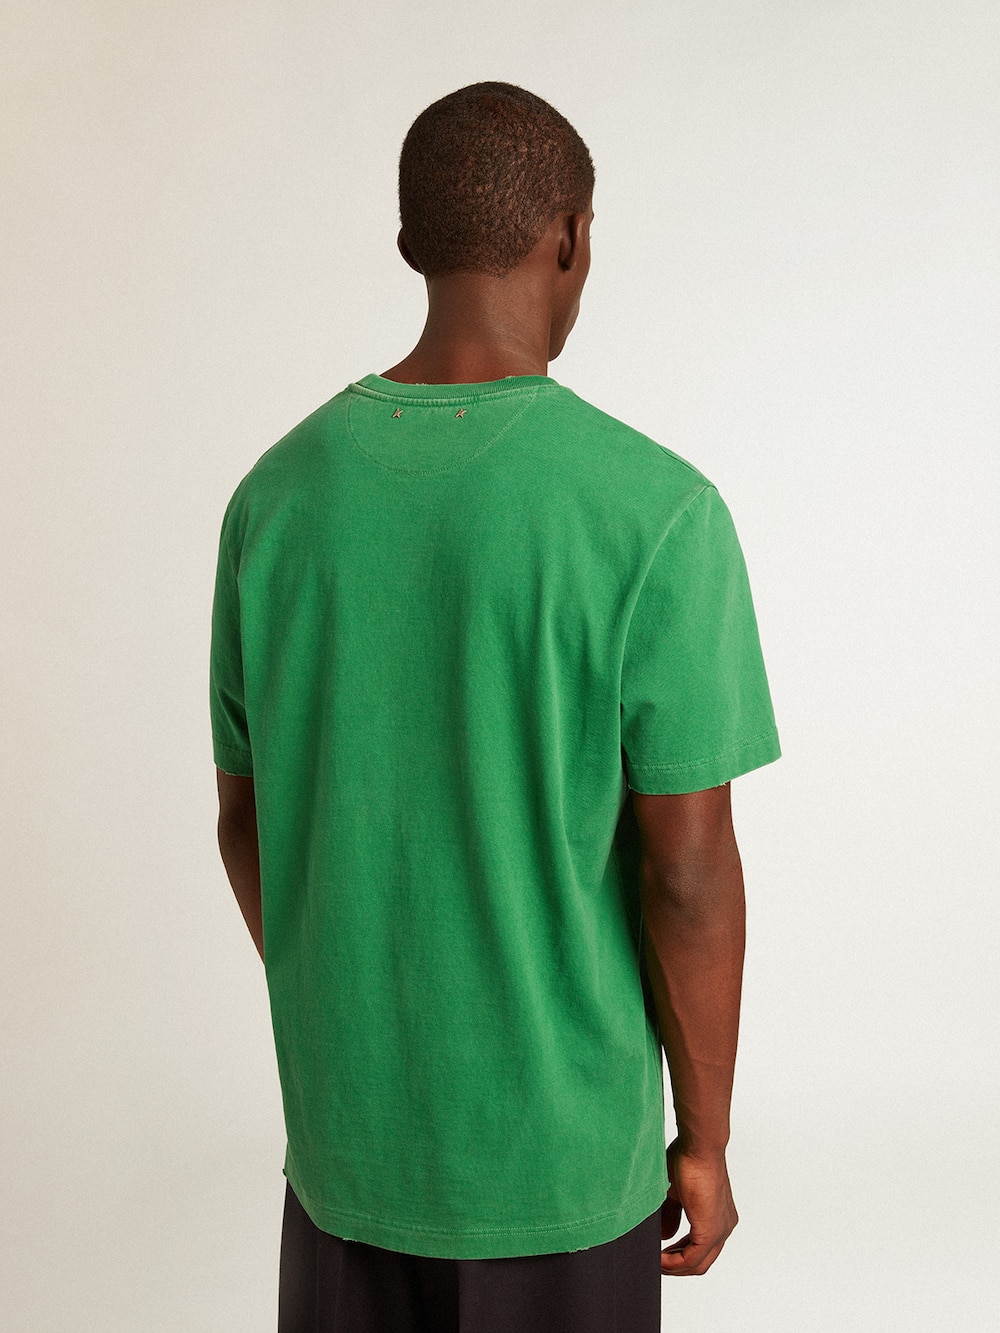 Golden Goose - T-Shirt da uomo in cotone di colore verde con scritta al centro in 